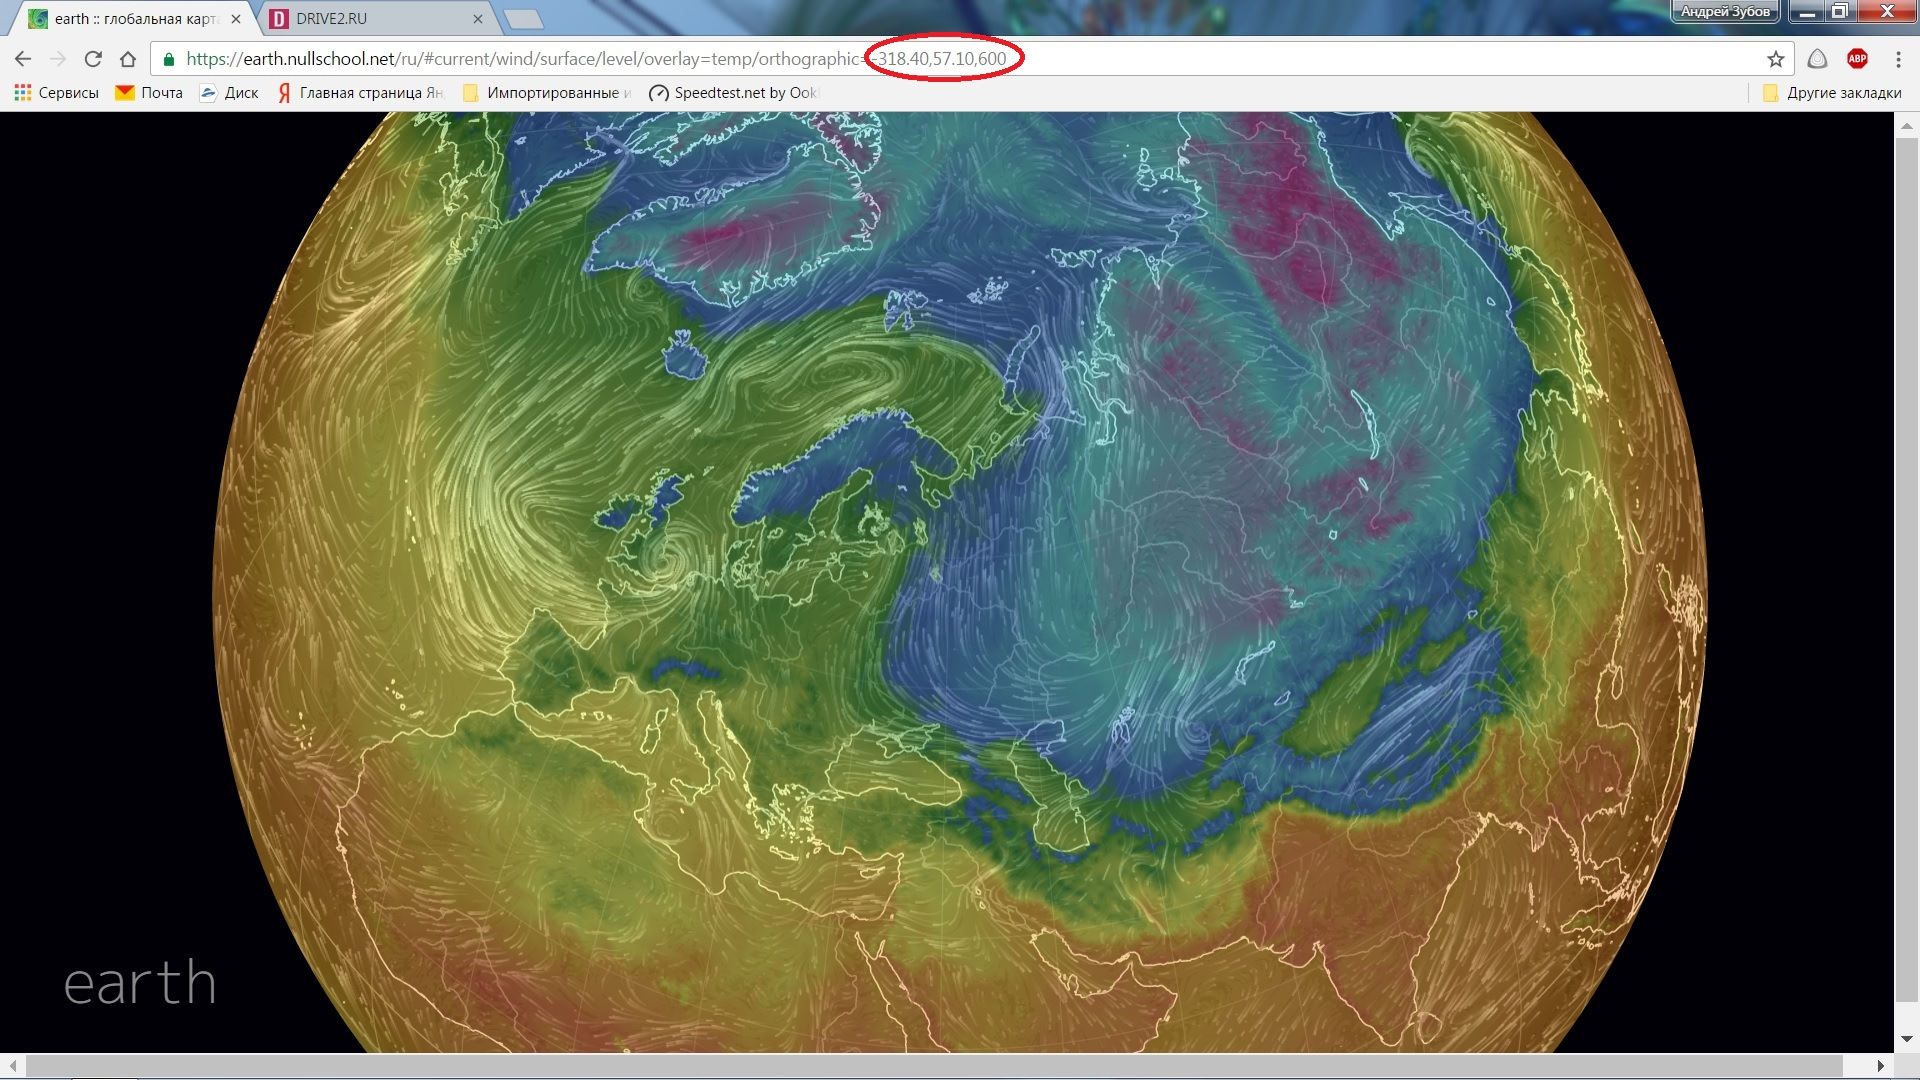 Казахстан земля и время. Карта ветров планеты. Глобальная карта ветров. Интерактивная карта воздух. Карта движения воздушных масс в реальном времени.